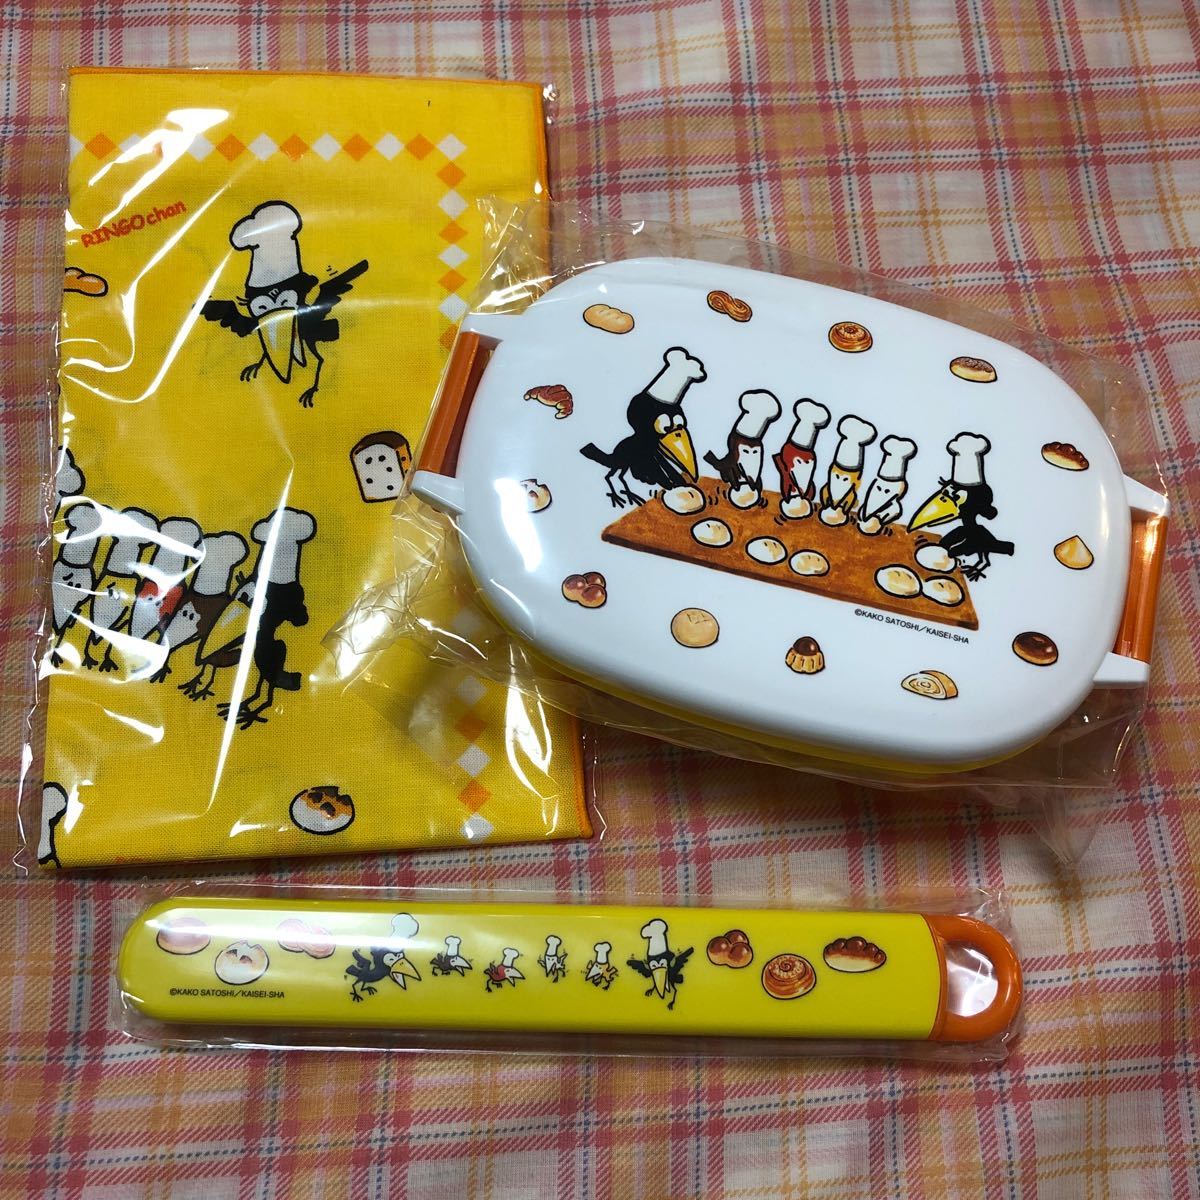  из .. хлеб . san ... считая . коробка для завтрака ланч box сделано в Японии ske-ta-. палочки для еды ланч Cross ценный редкость книга с картинками товары 